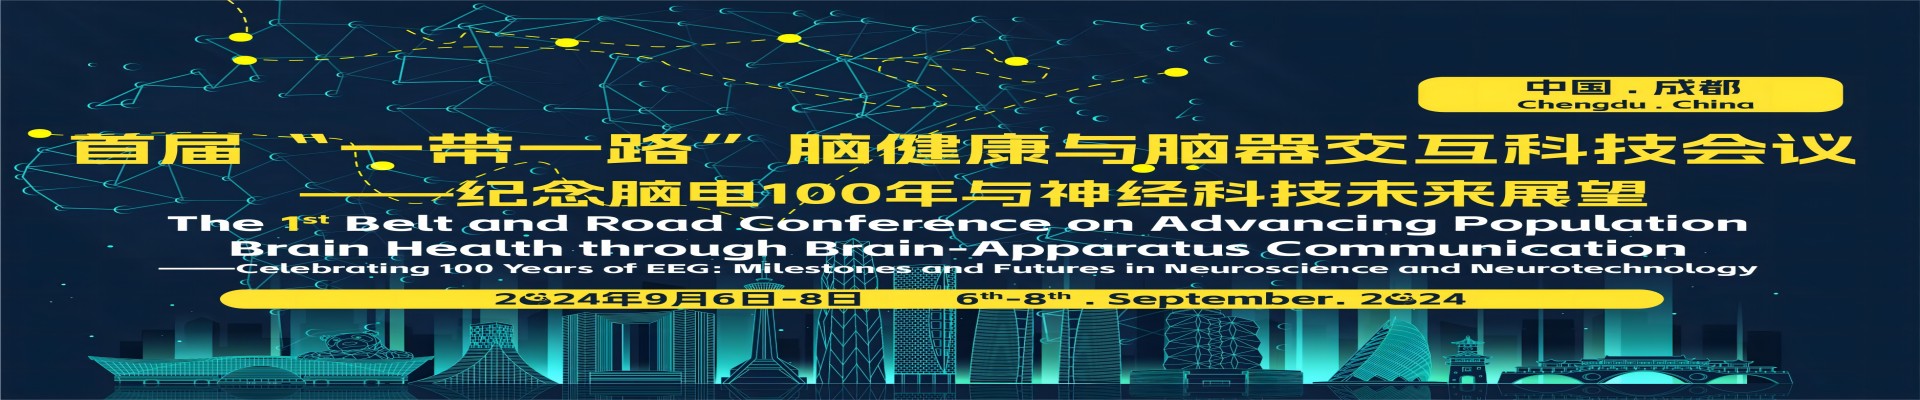 首届“一带一路”脑健康与脑器交互科技会议 ——纪念脑电100年与神经科技未来展望